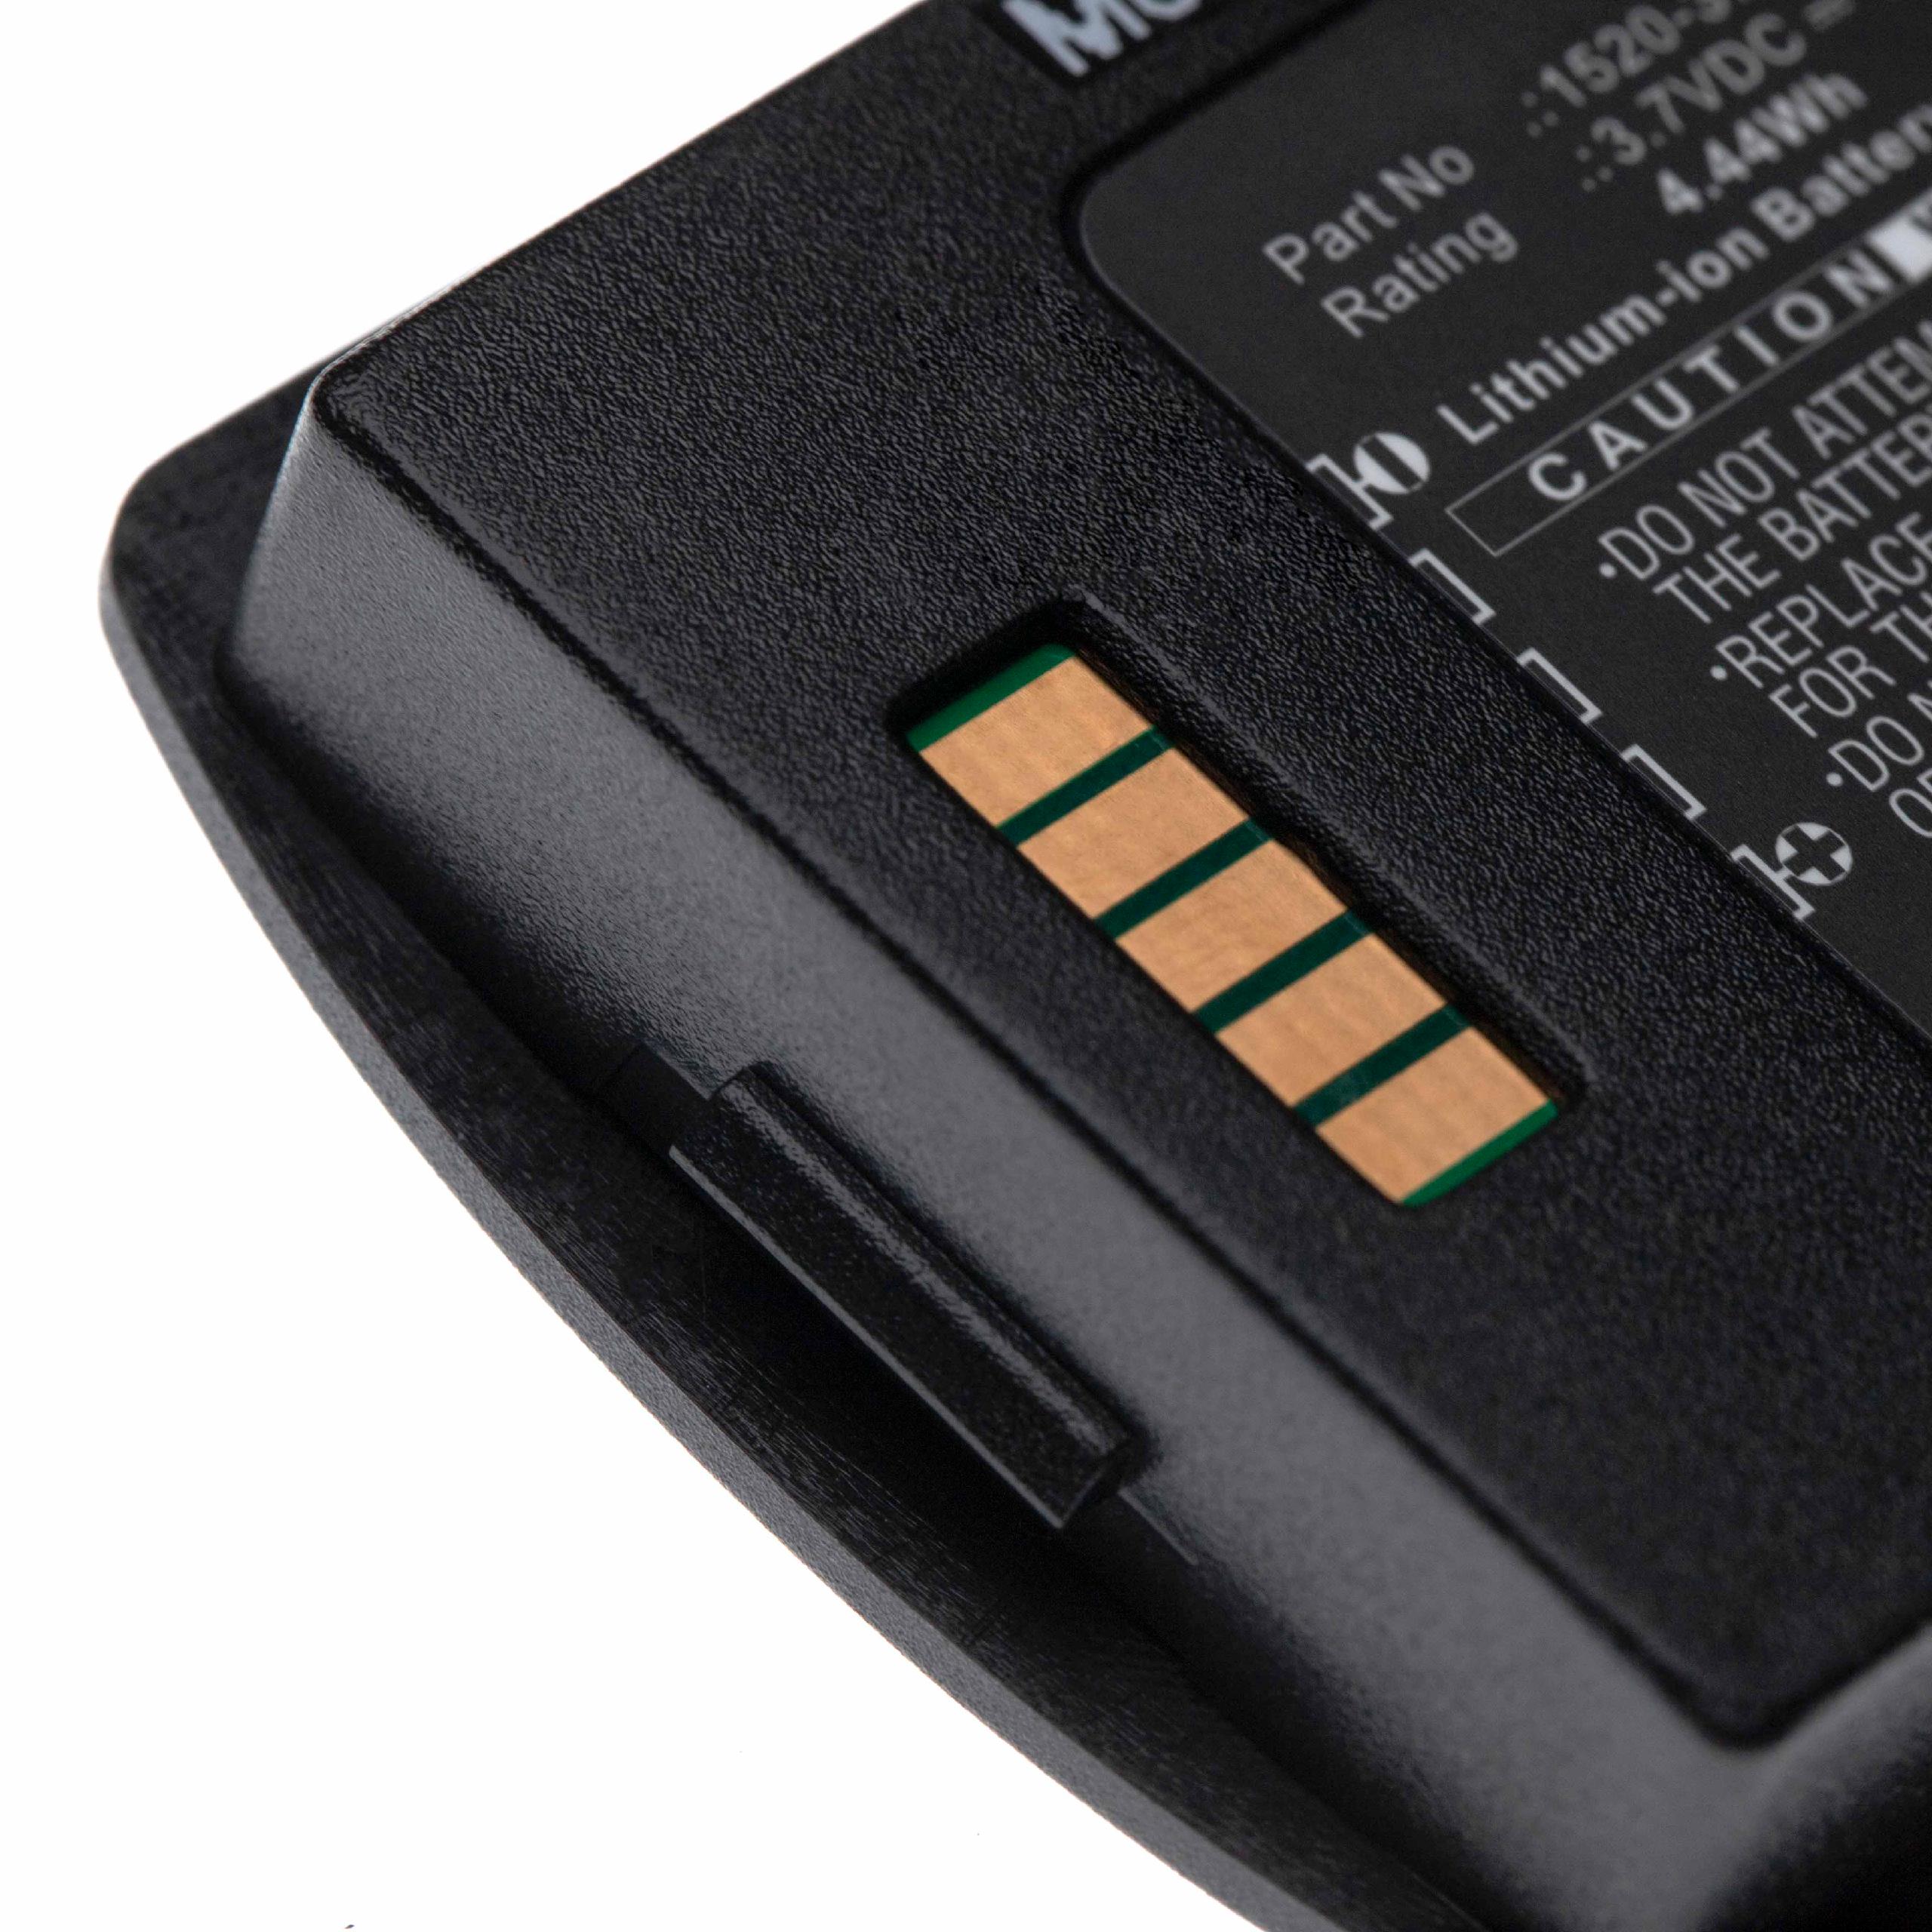 Batterie remplace Polycom / Spectralink 1520-37214-001 pour téléphone portable - 1200mAh, 3,7V, Li-ion